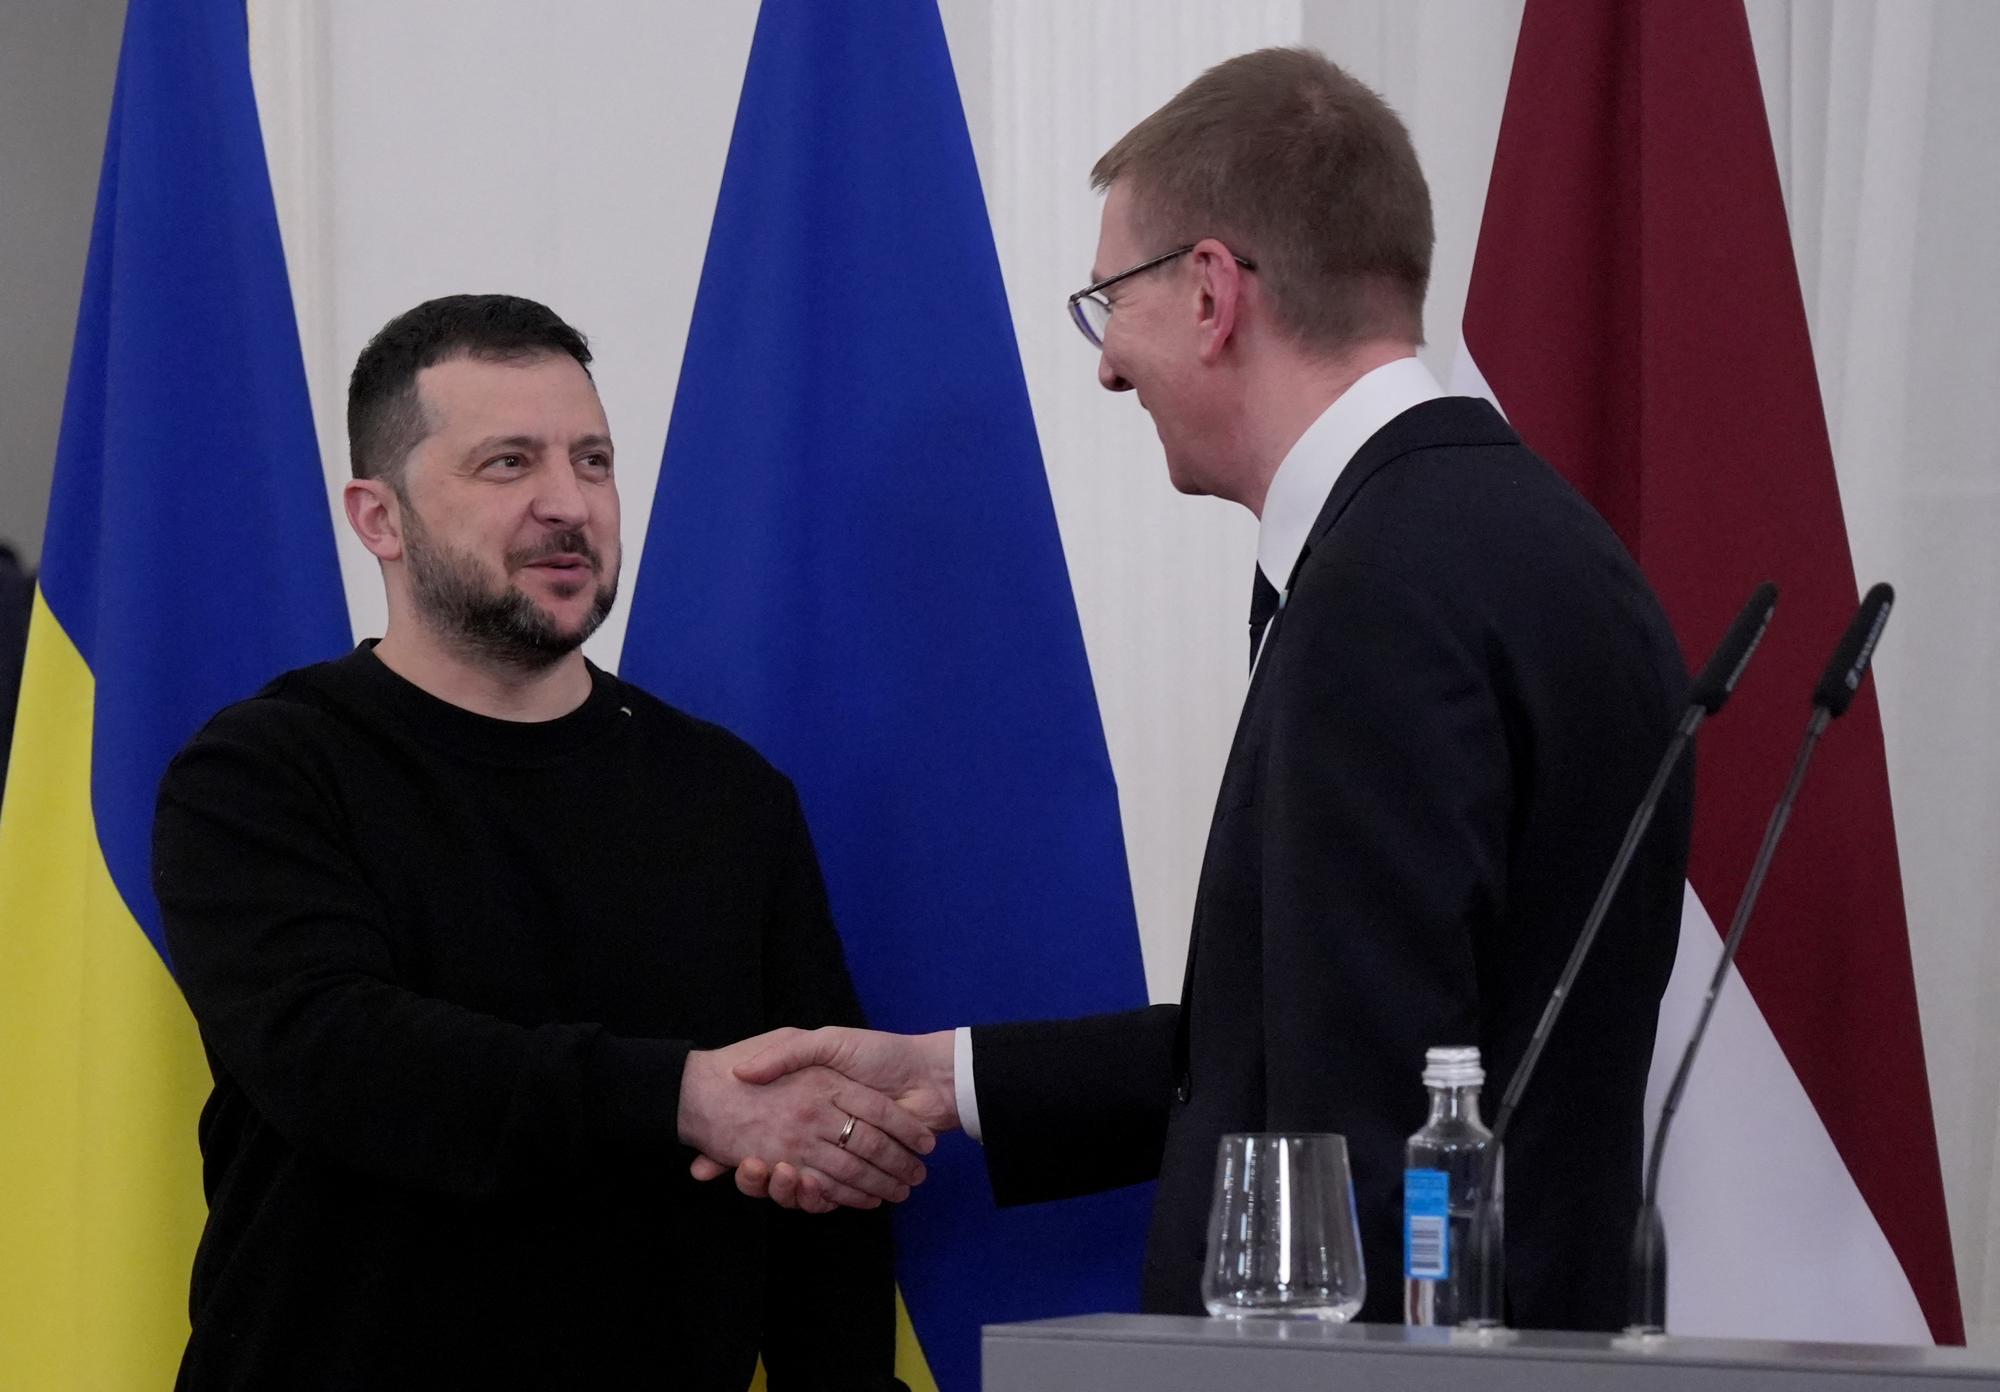 Le président ukrainien Volodymyr Zelensky et le président letton Edgars Rinkevics ont signé un accord d'aide militaire jeudi. [REUTERS - INTS KALNINS]